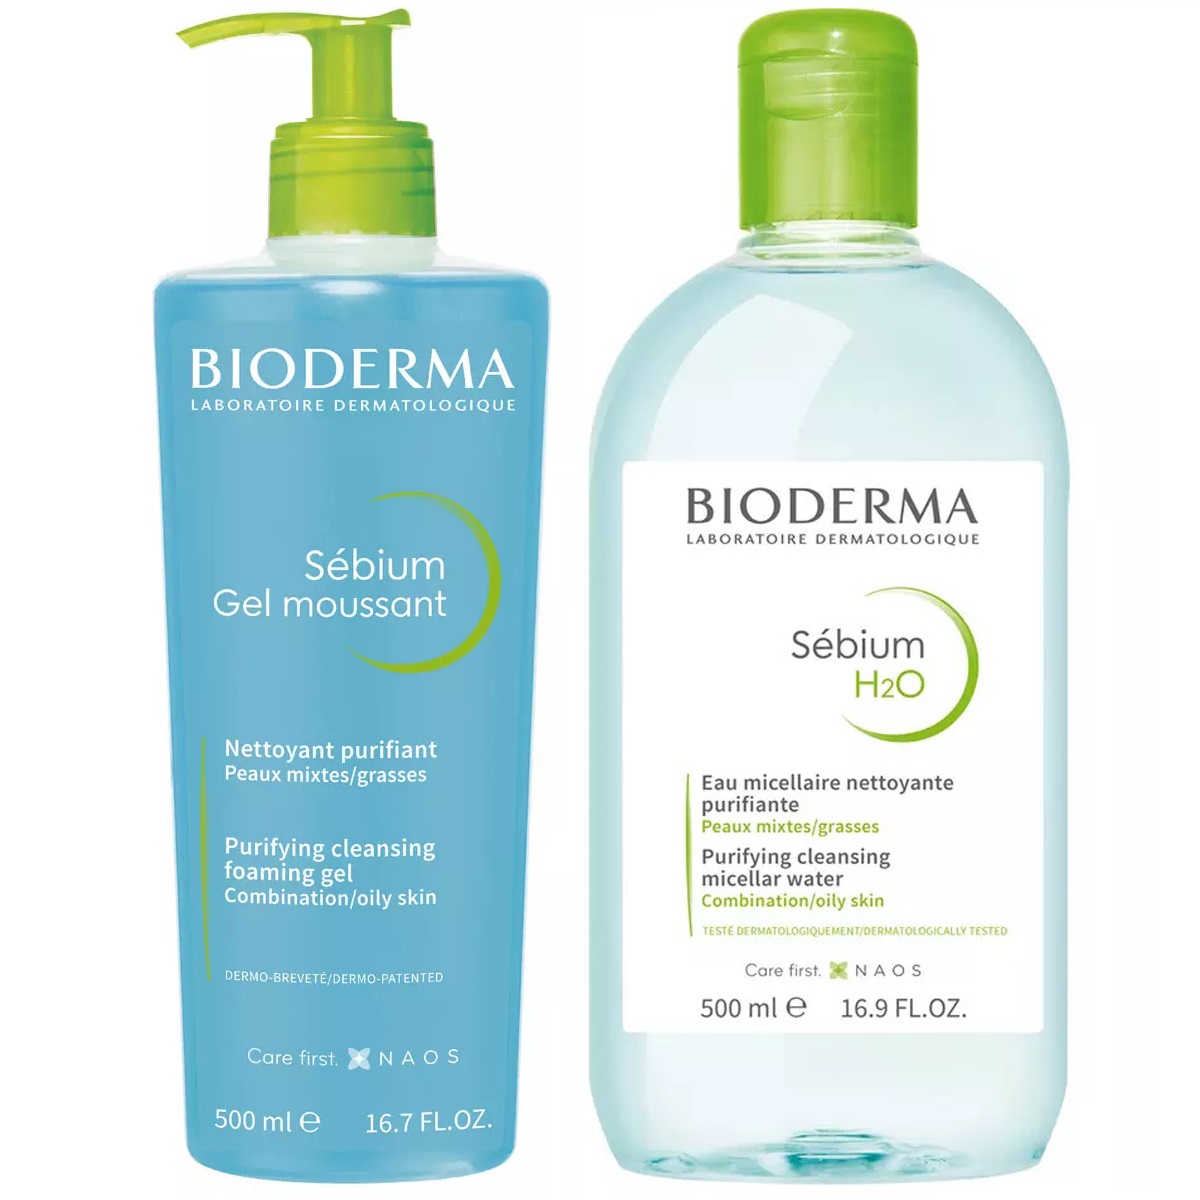 Bioderma Набор очищающий: гель, 500 мл + мицеллярная вода, 500 мл (Bioderma, Sebium) bioderma набор для очищения жирной кожи гель 500 мл лосьон 200 мл bioderma sebium